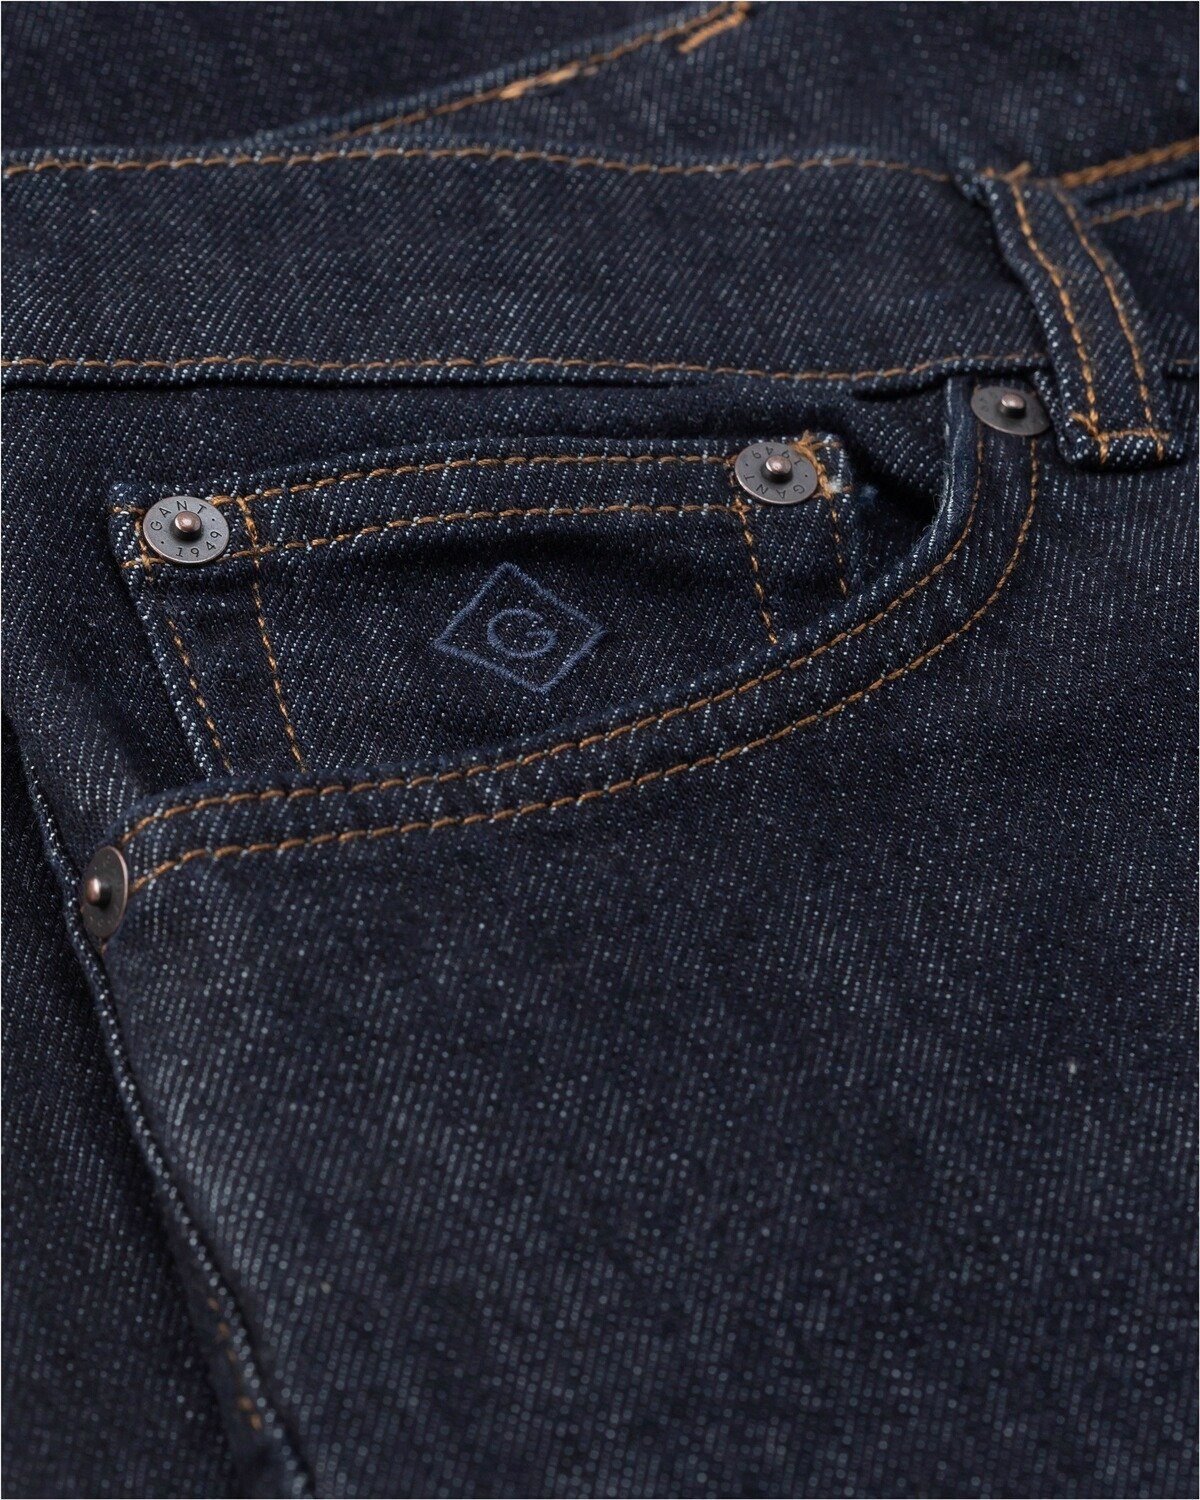 Jeans Gant Arley Darkblue 5-Pocket-Jeans